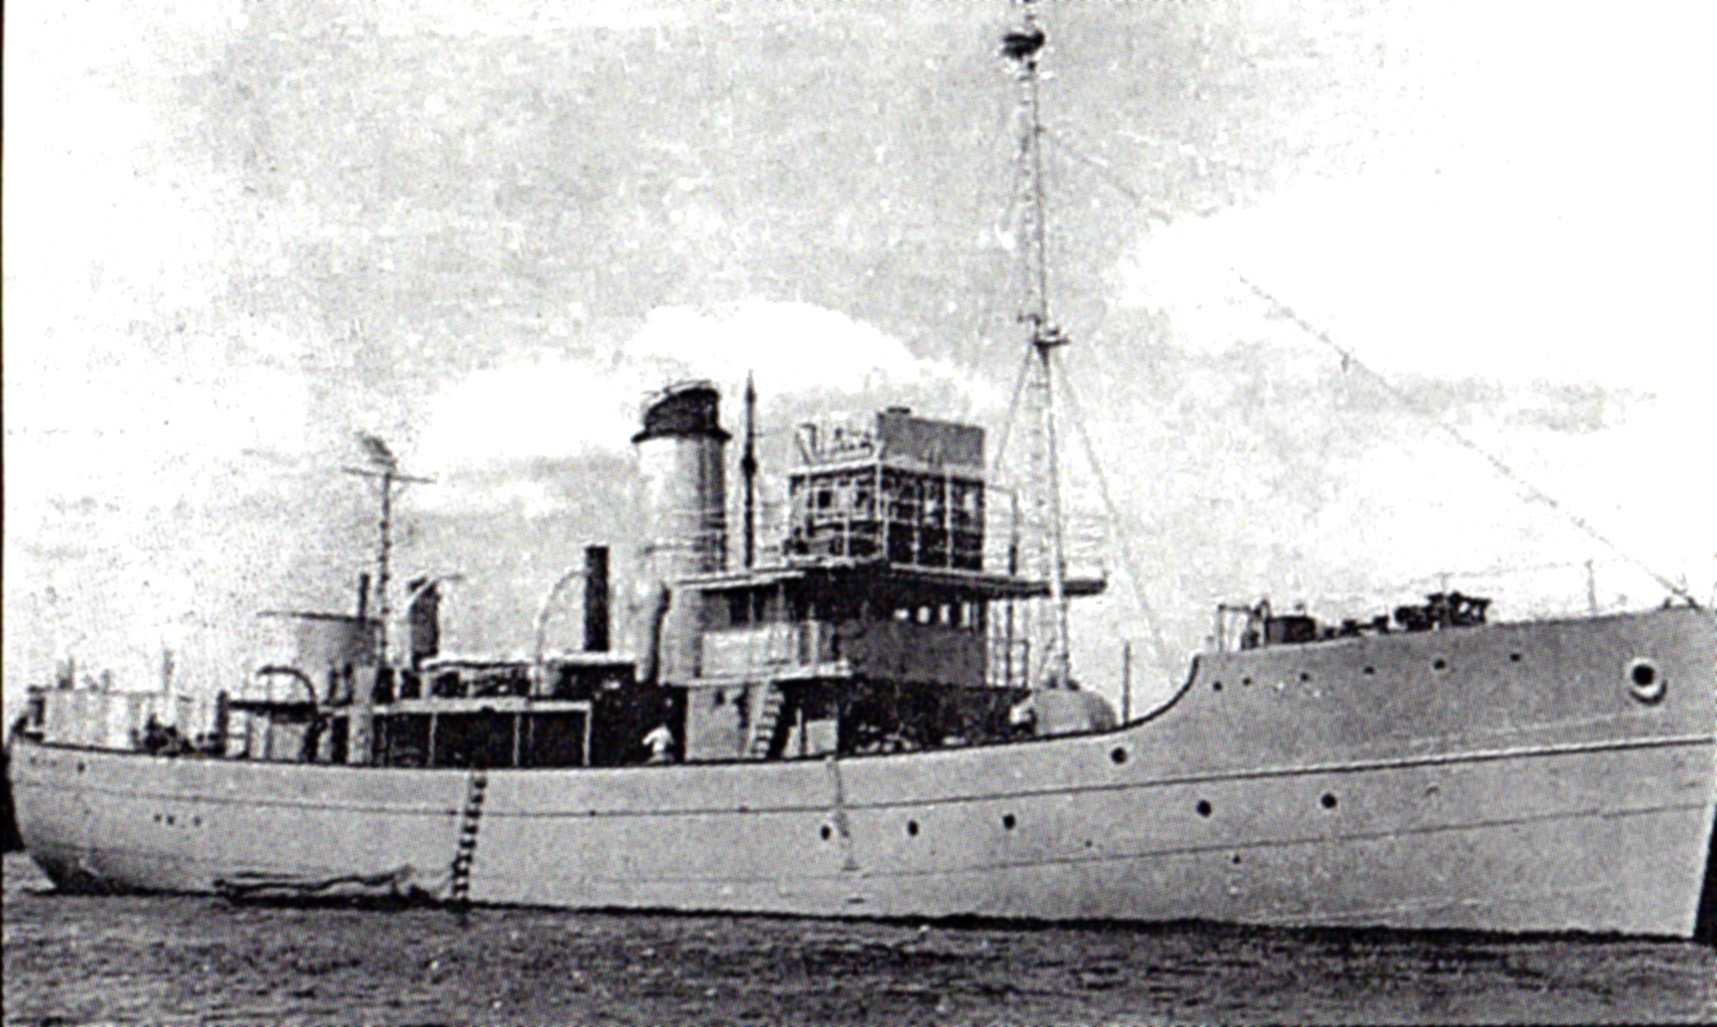 HMS Sarabande